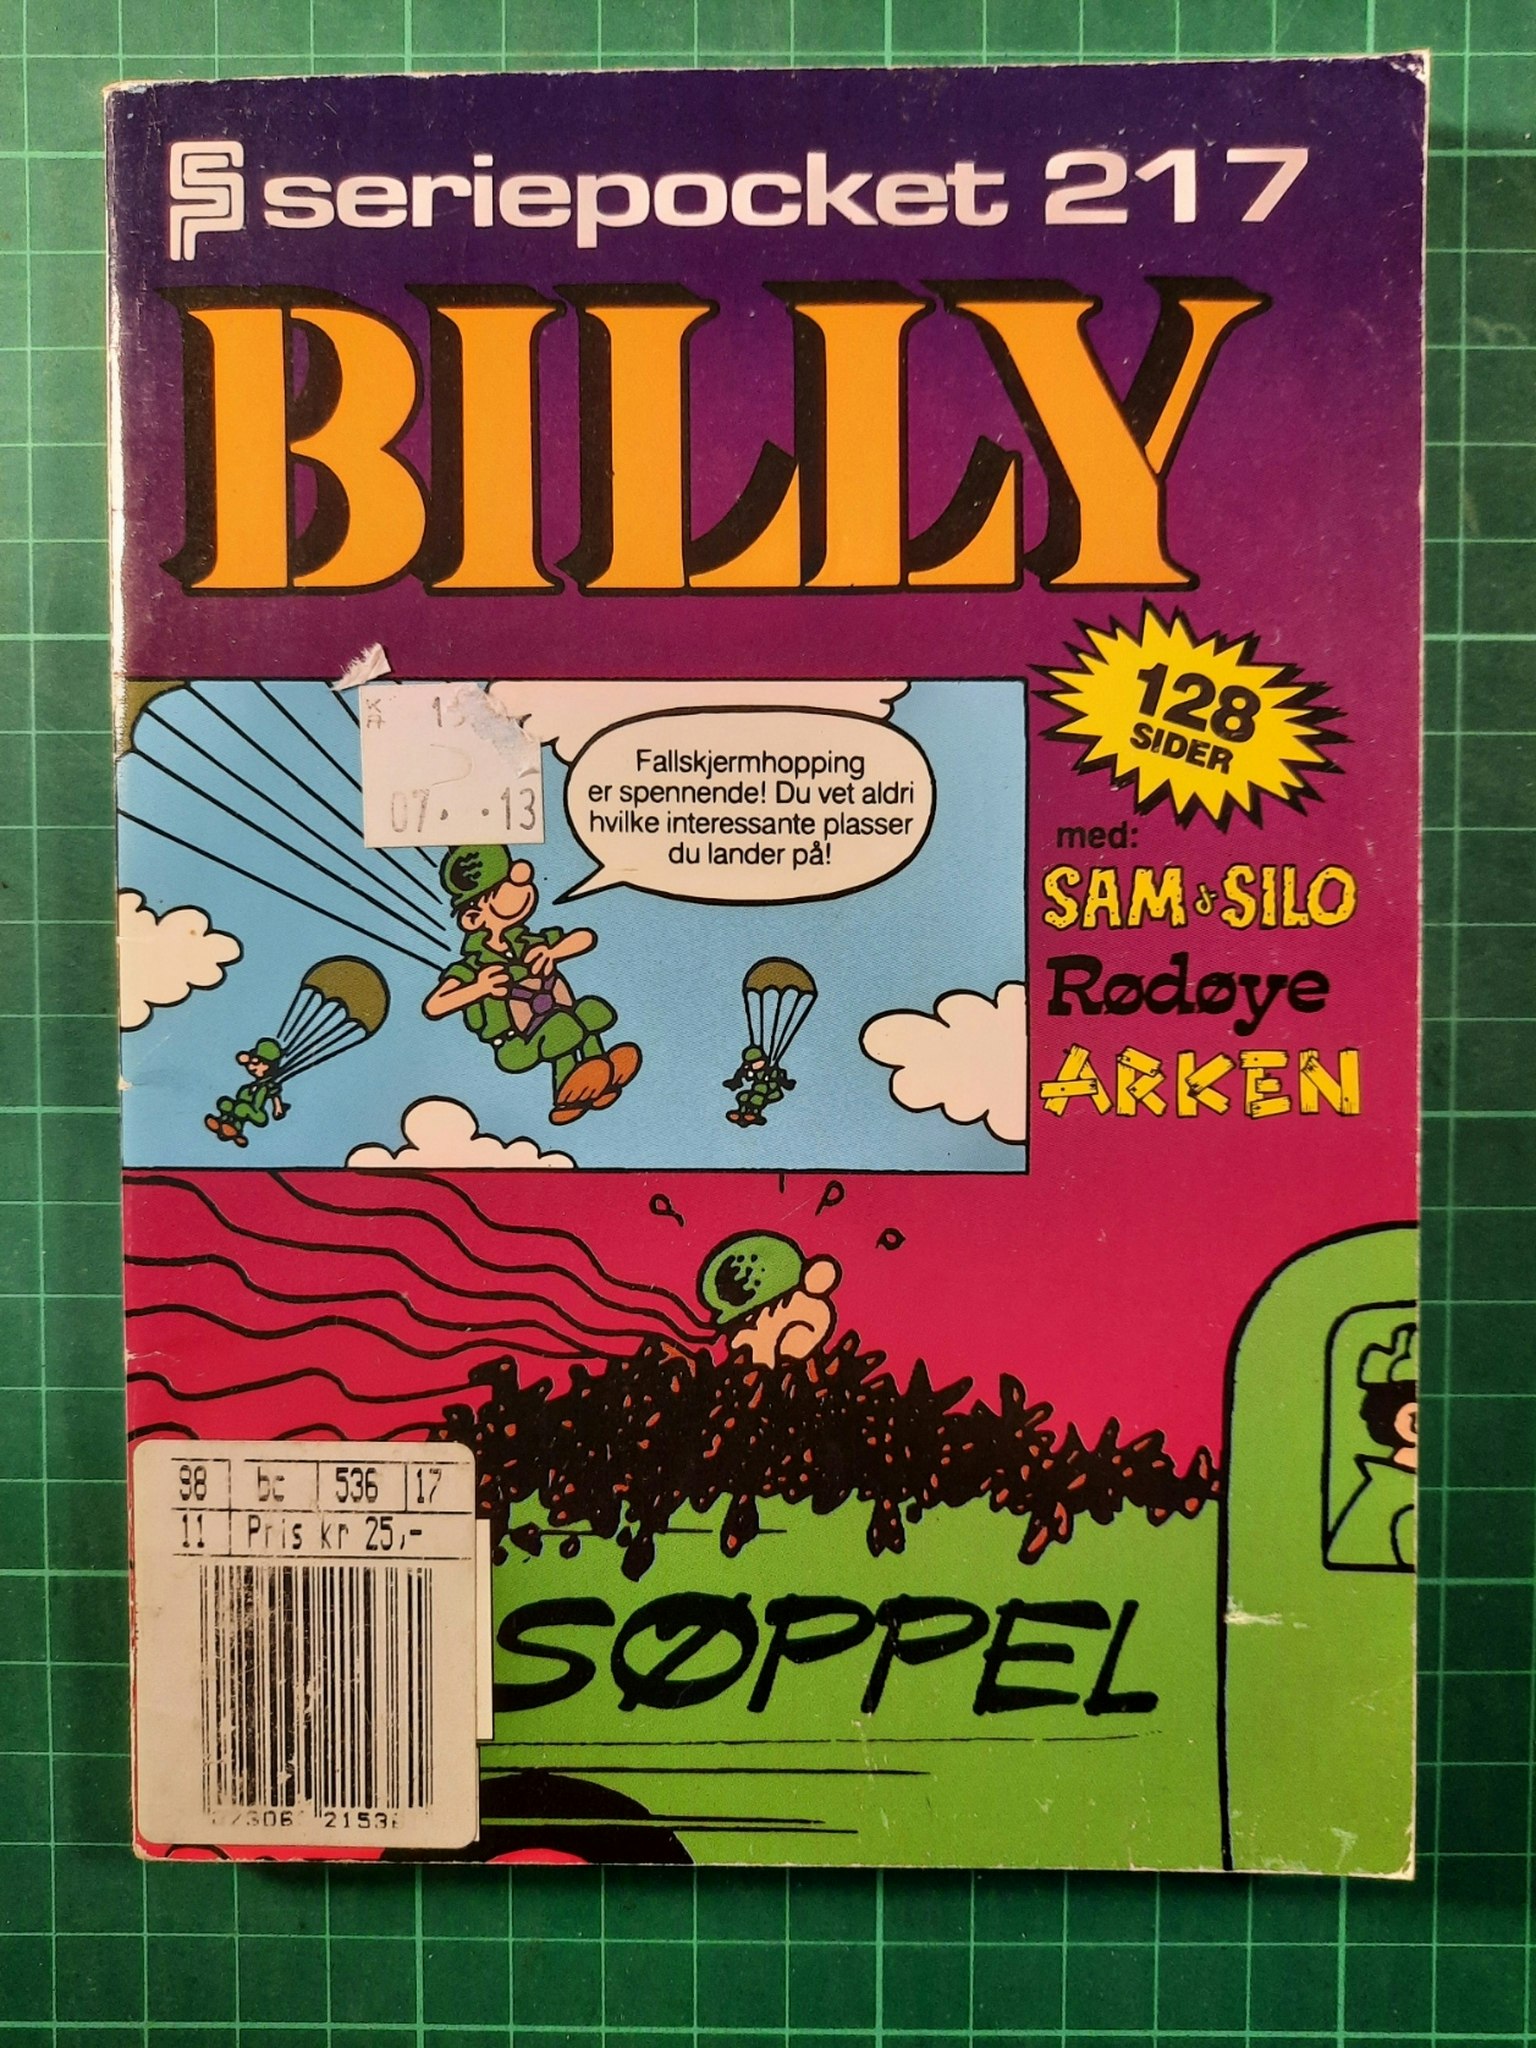 Serie-pocket 217 : Billy